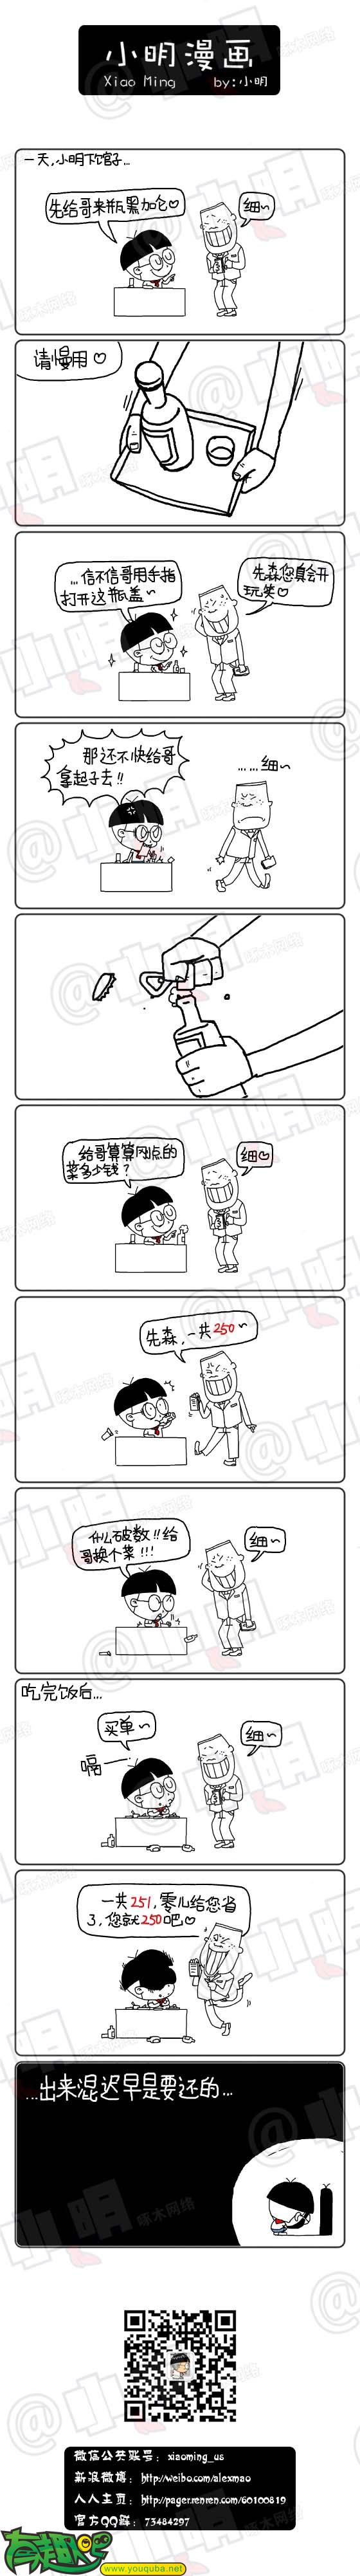 小明系列漫画:吃饭那些事！